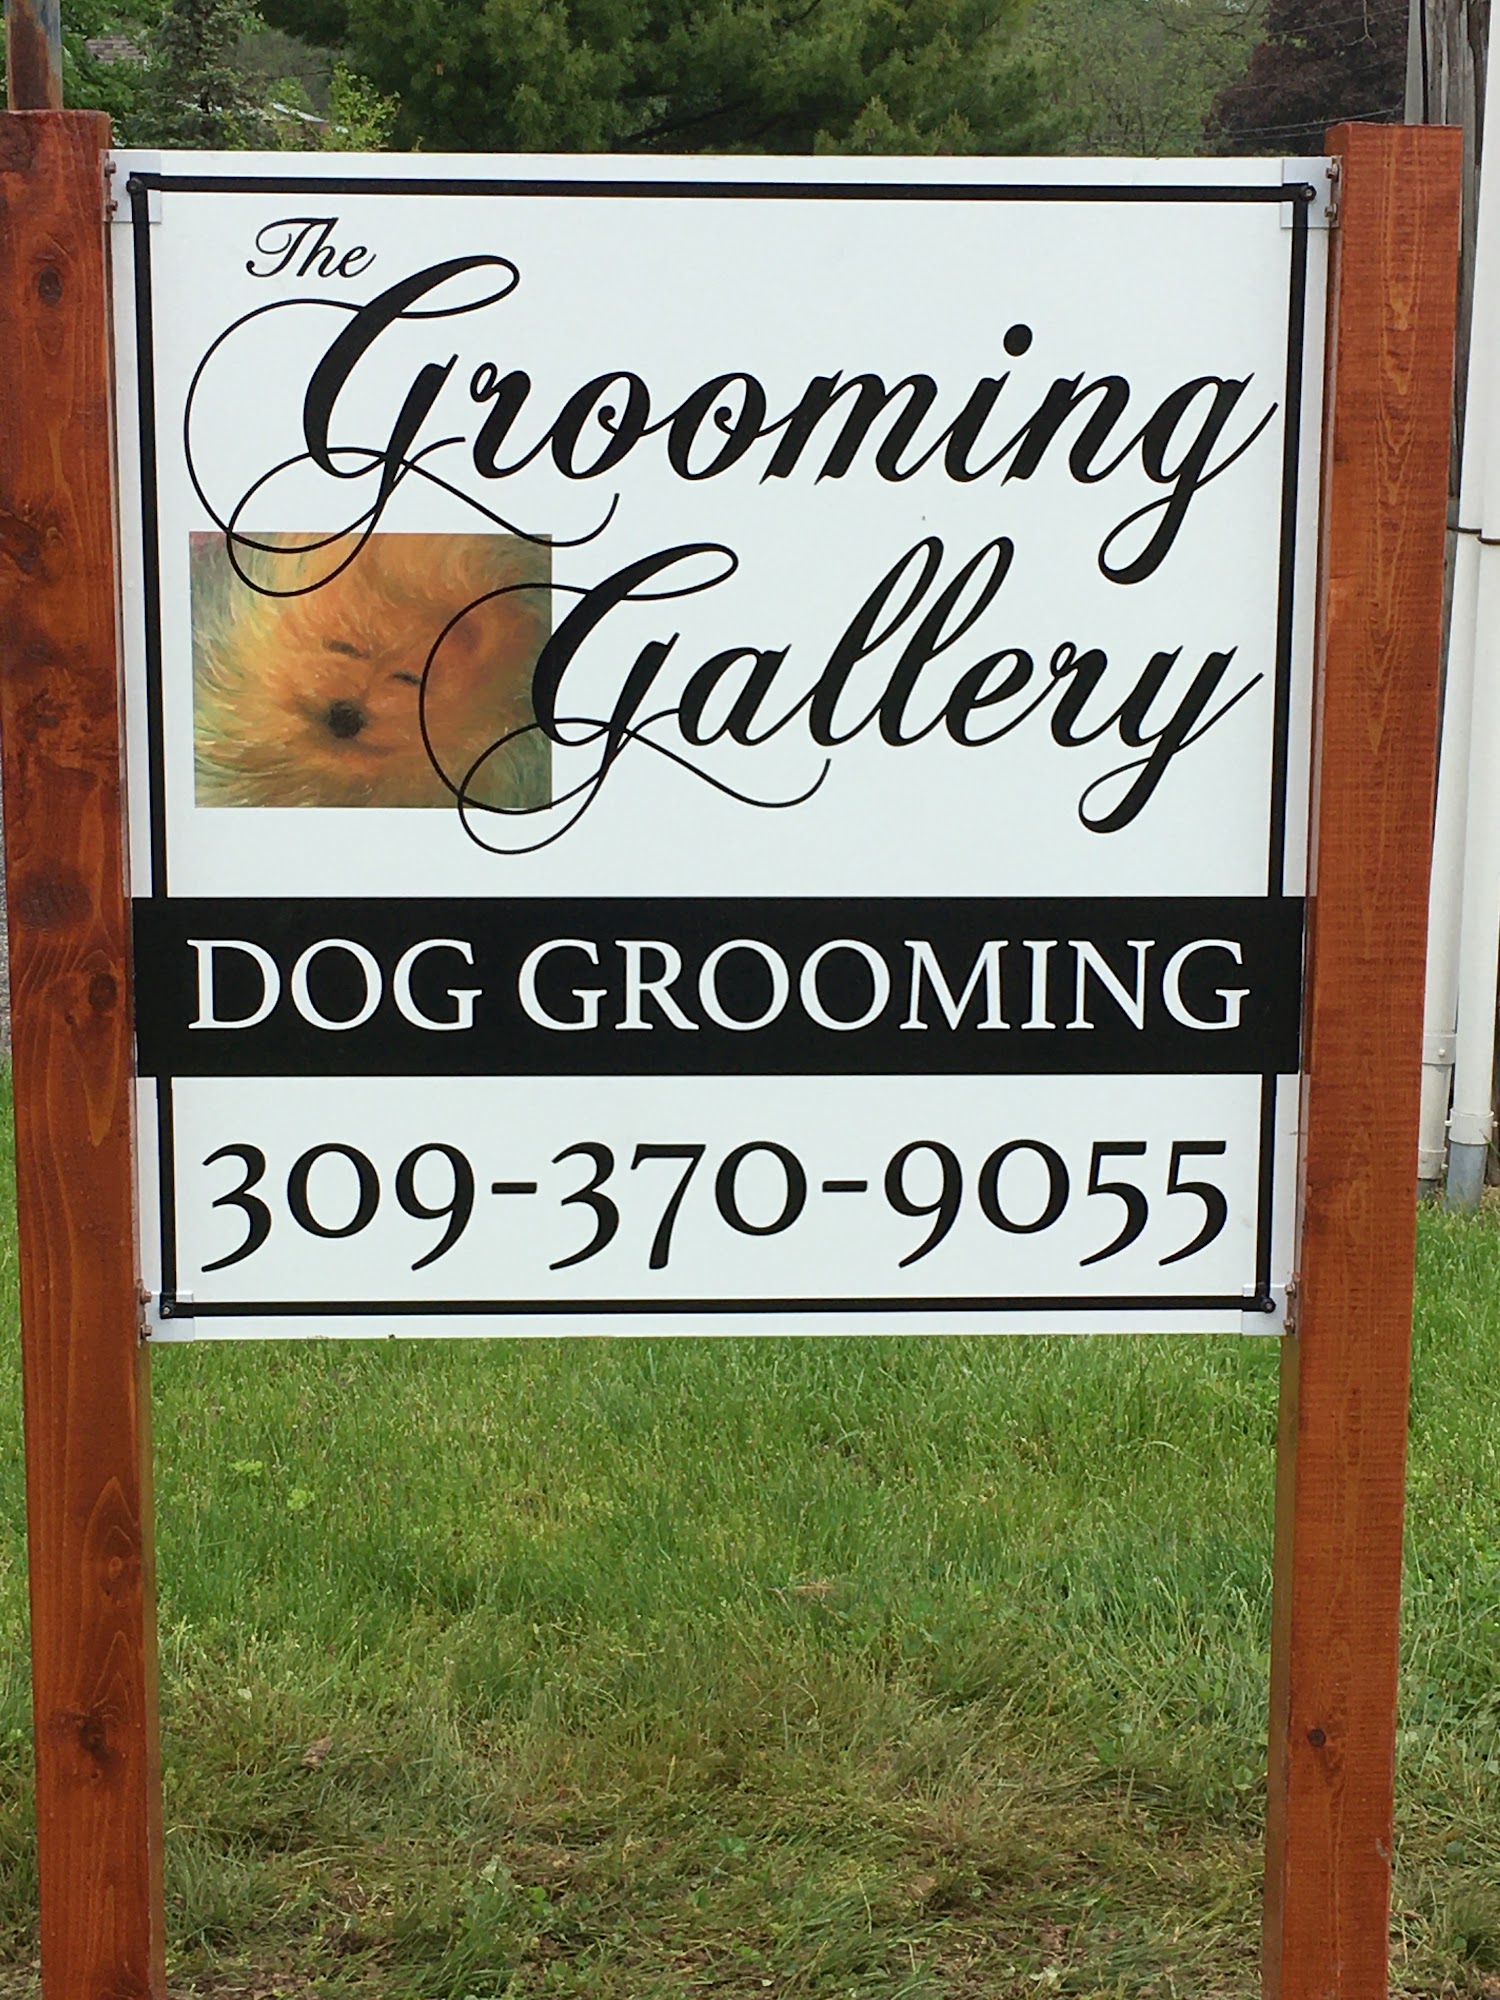 The Grooming Gallery, LLC